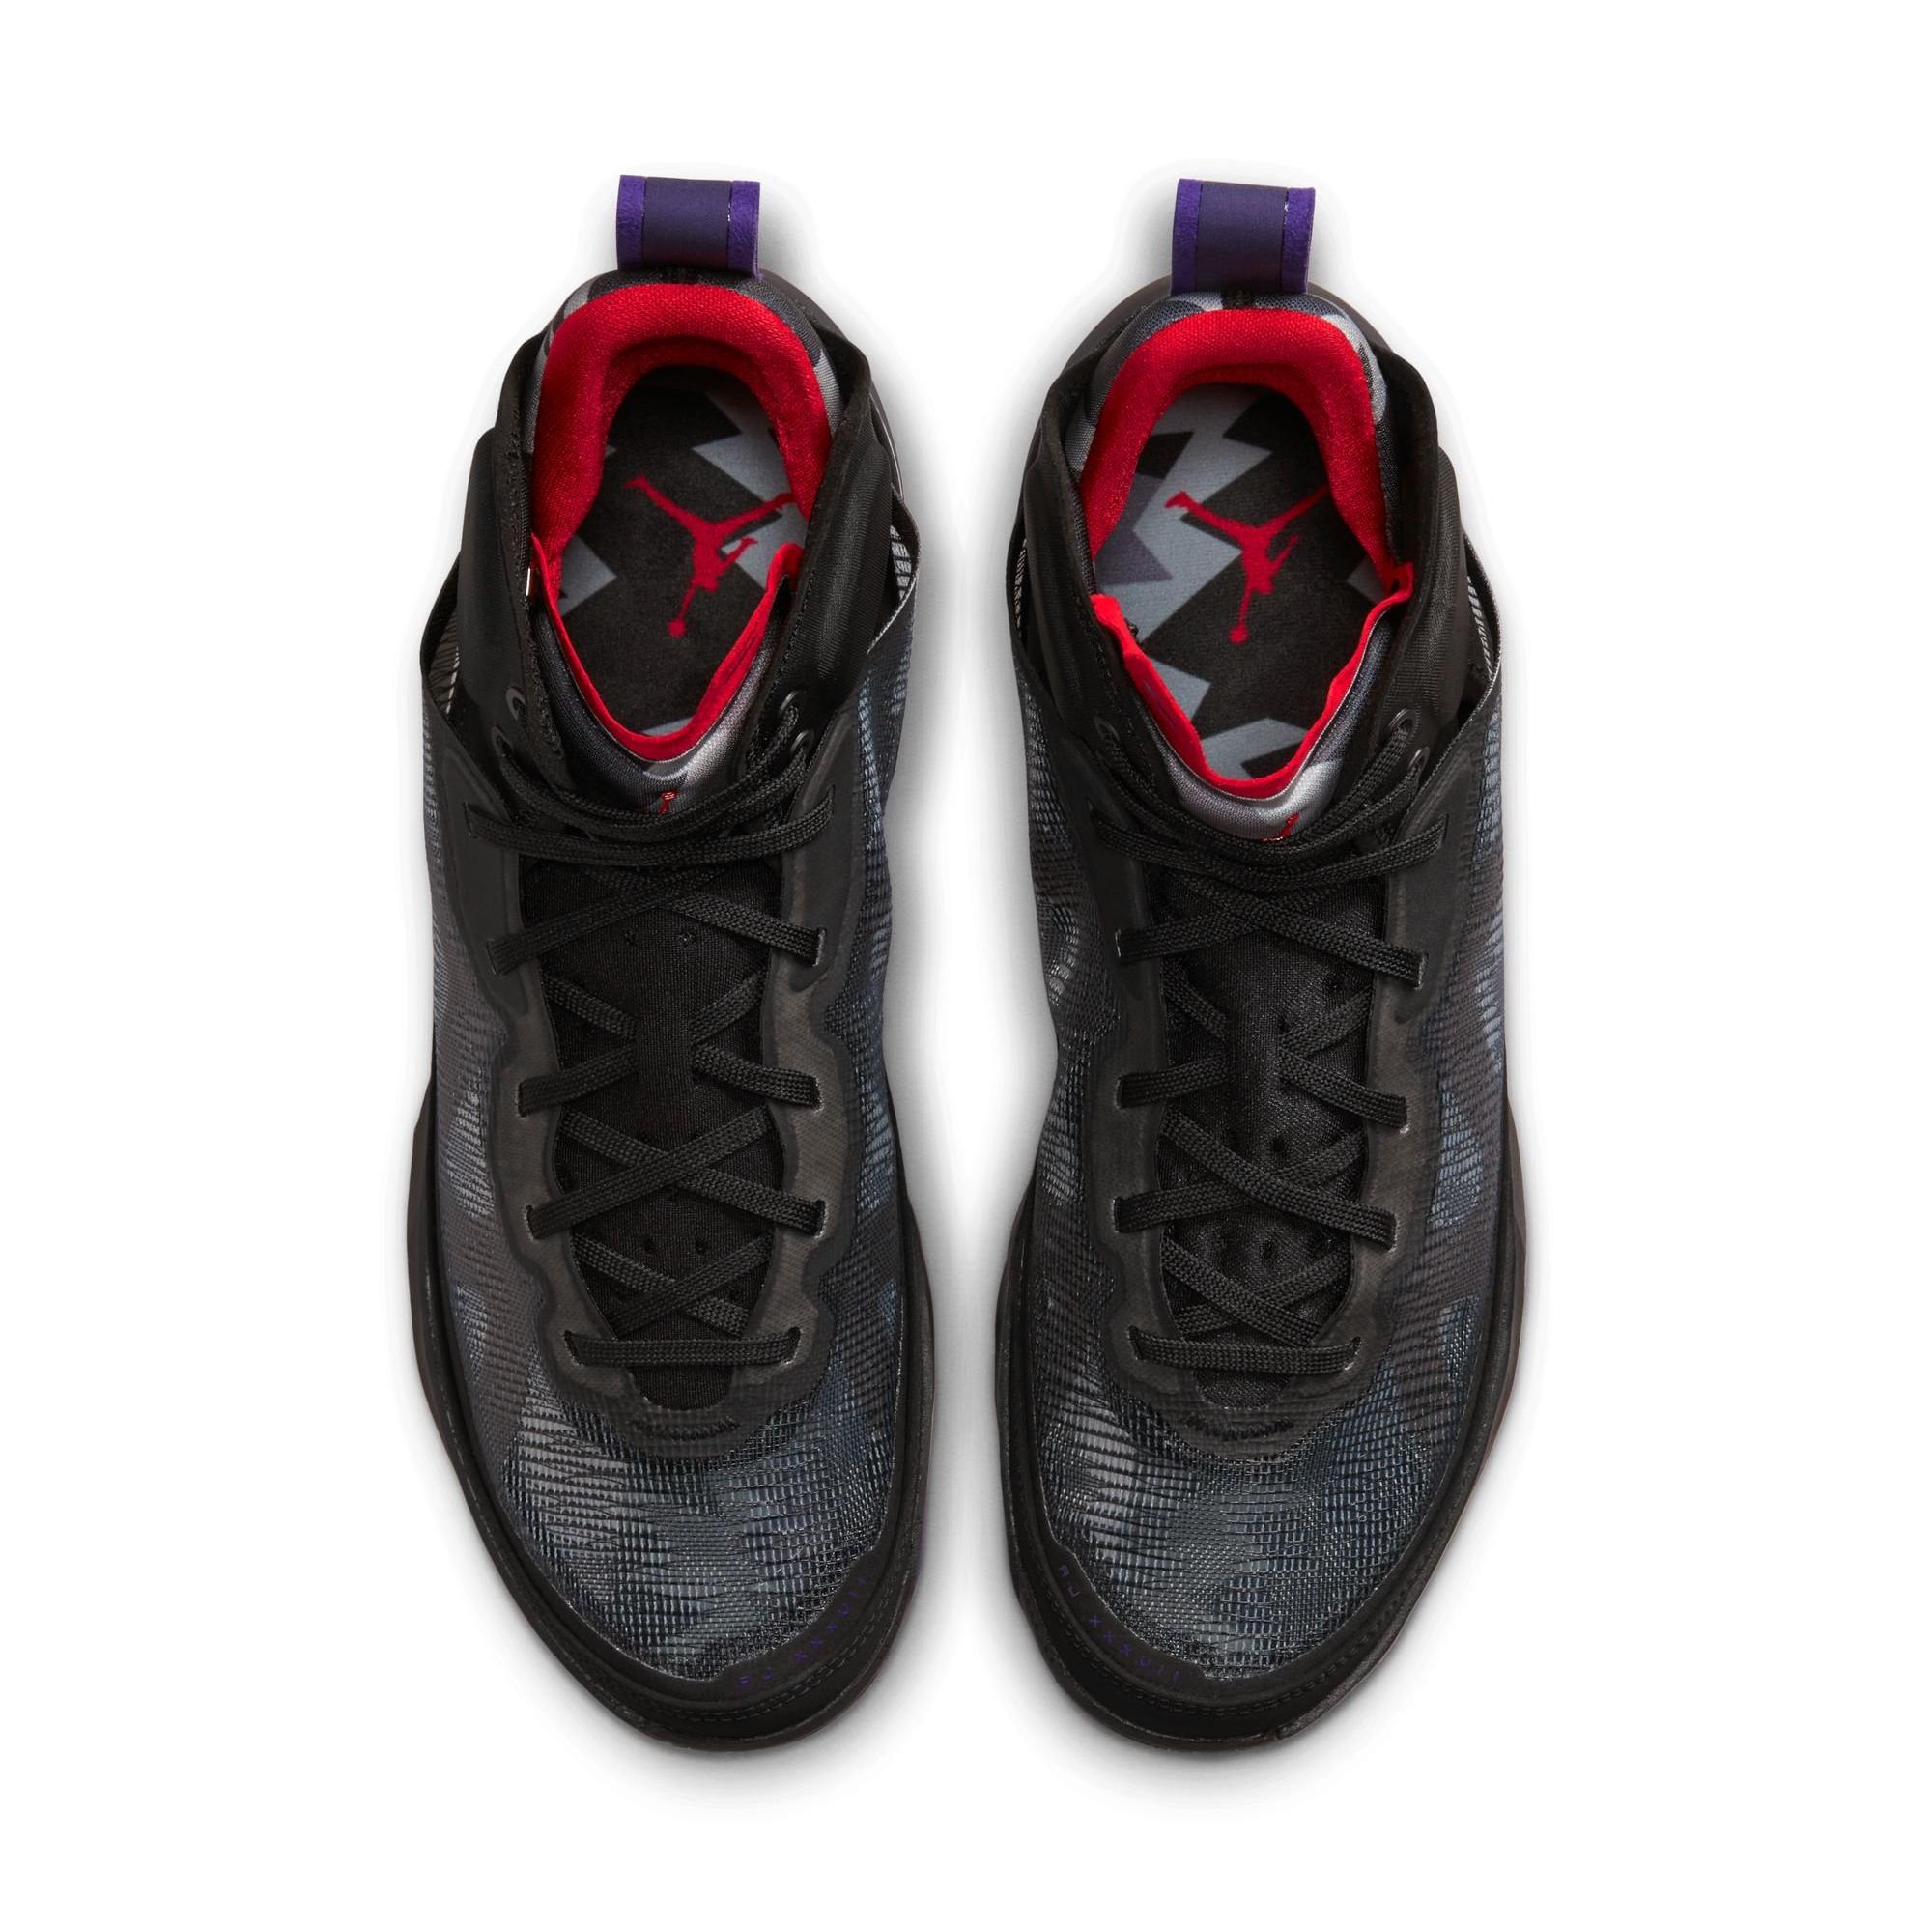 Sneakers Release – Jordan XXXVII “Black/True Red/Club Purple” Men’s ...